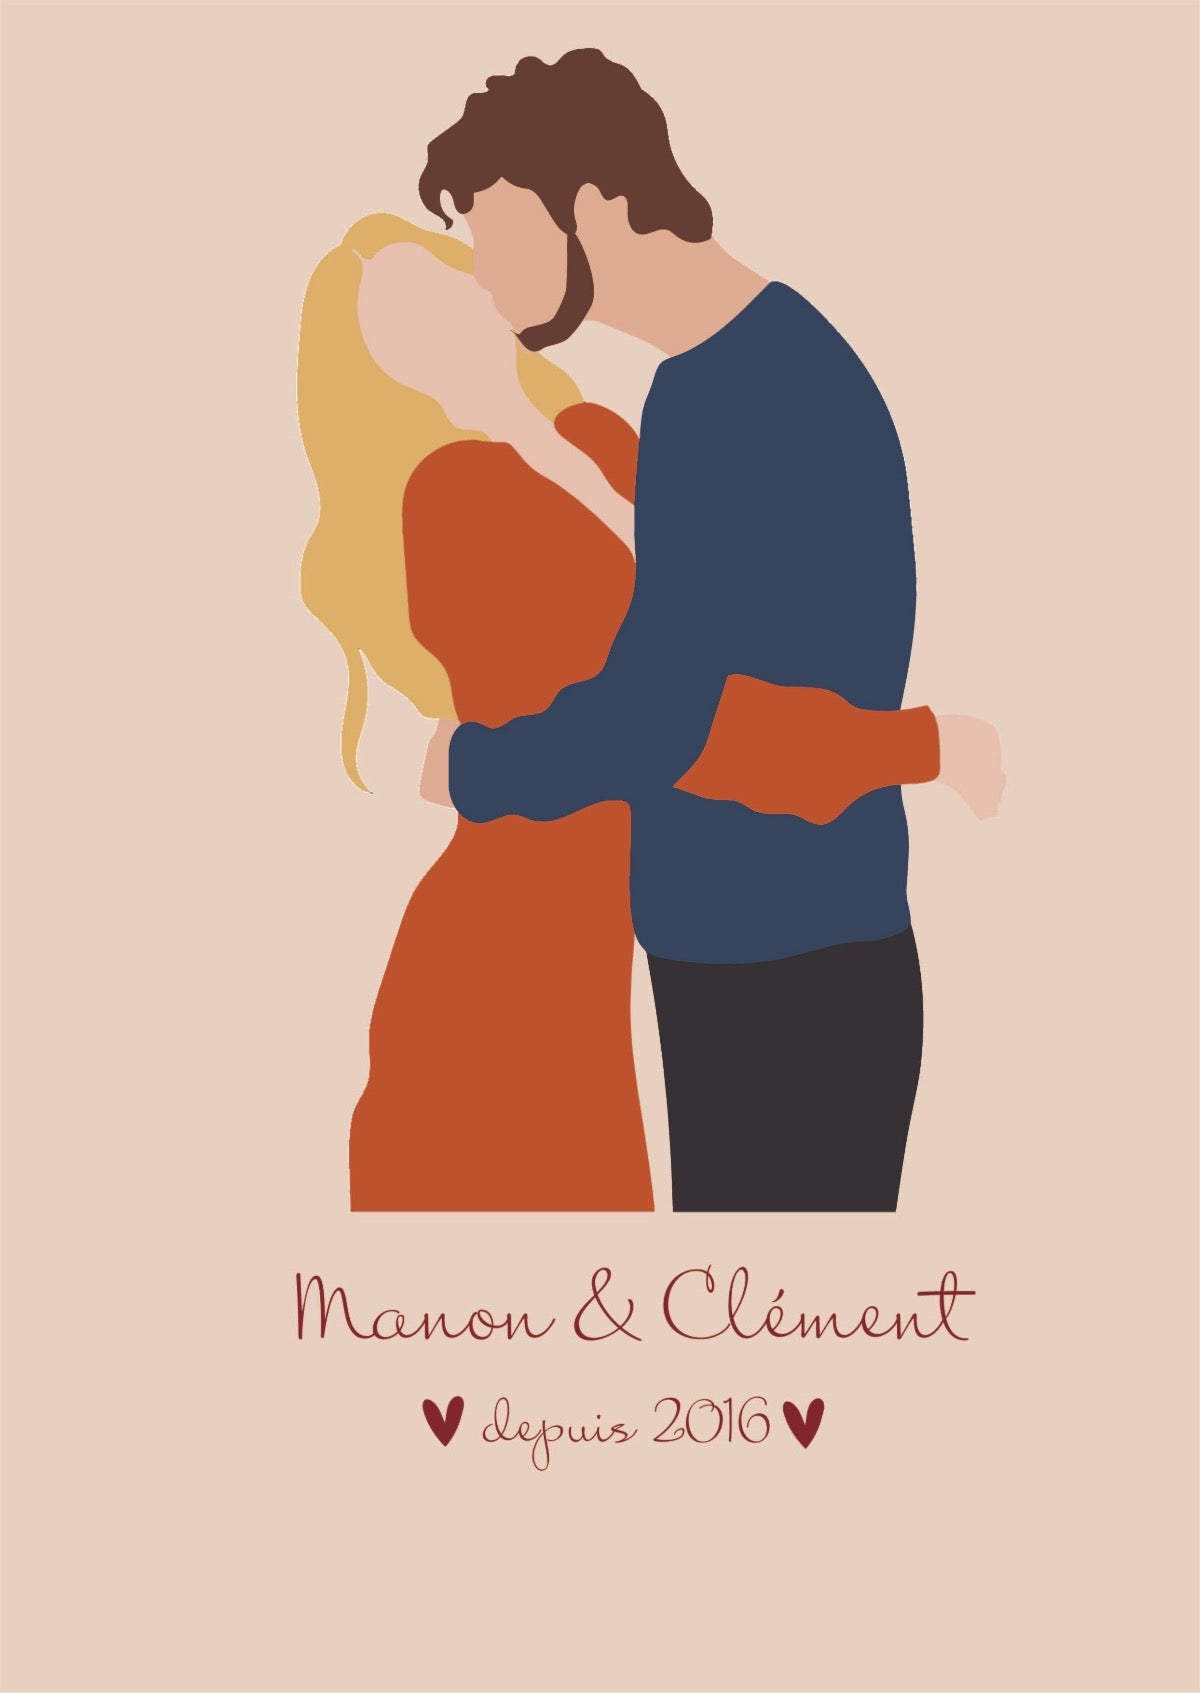 Affiche Personnalisée Couple d'Hommes - Célébrez Votre Amour avec Élégance  - Jusqu'à la lune